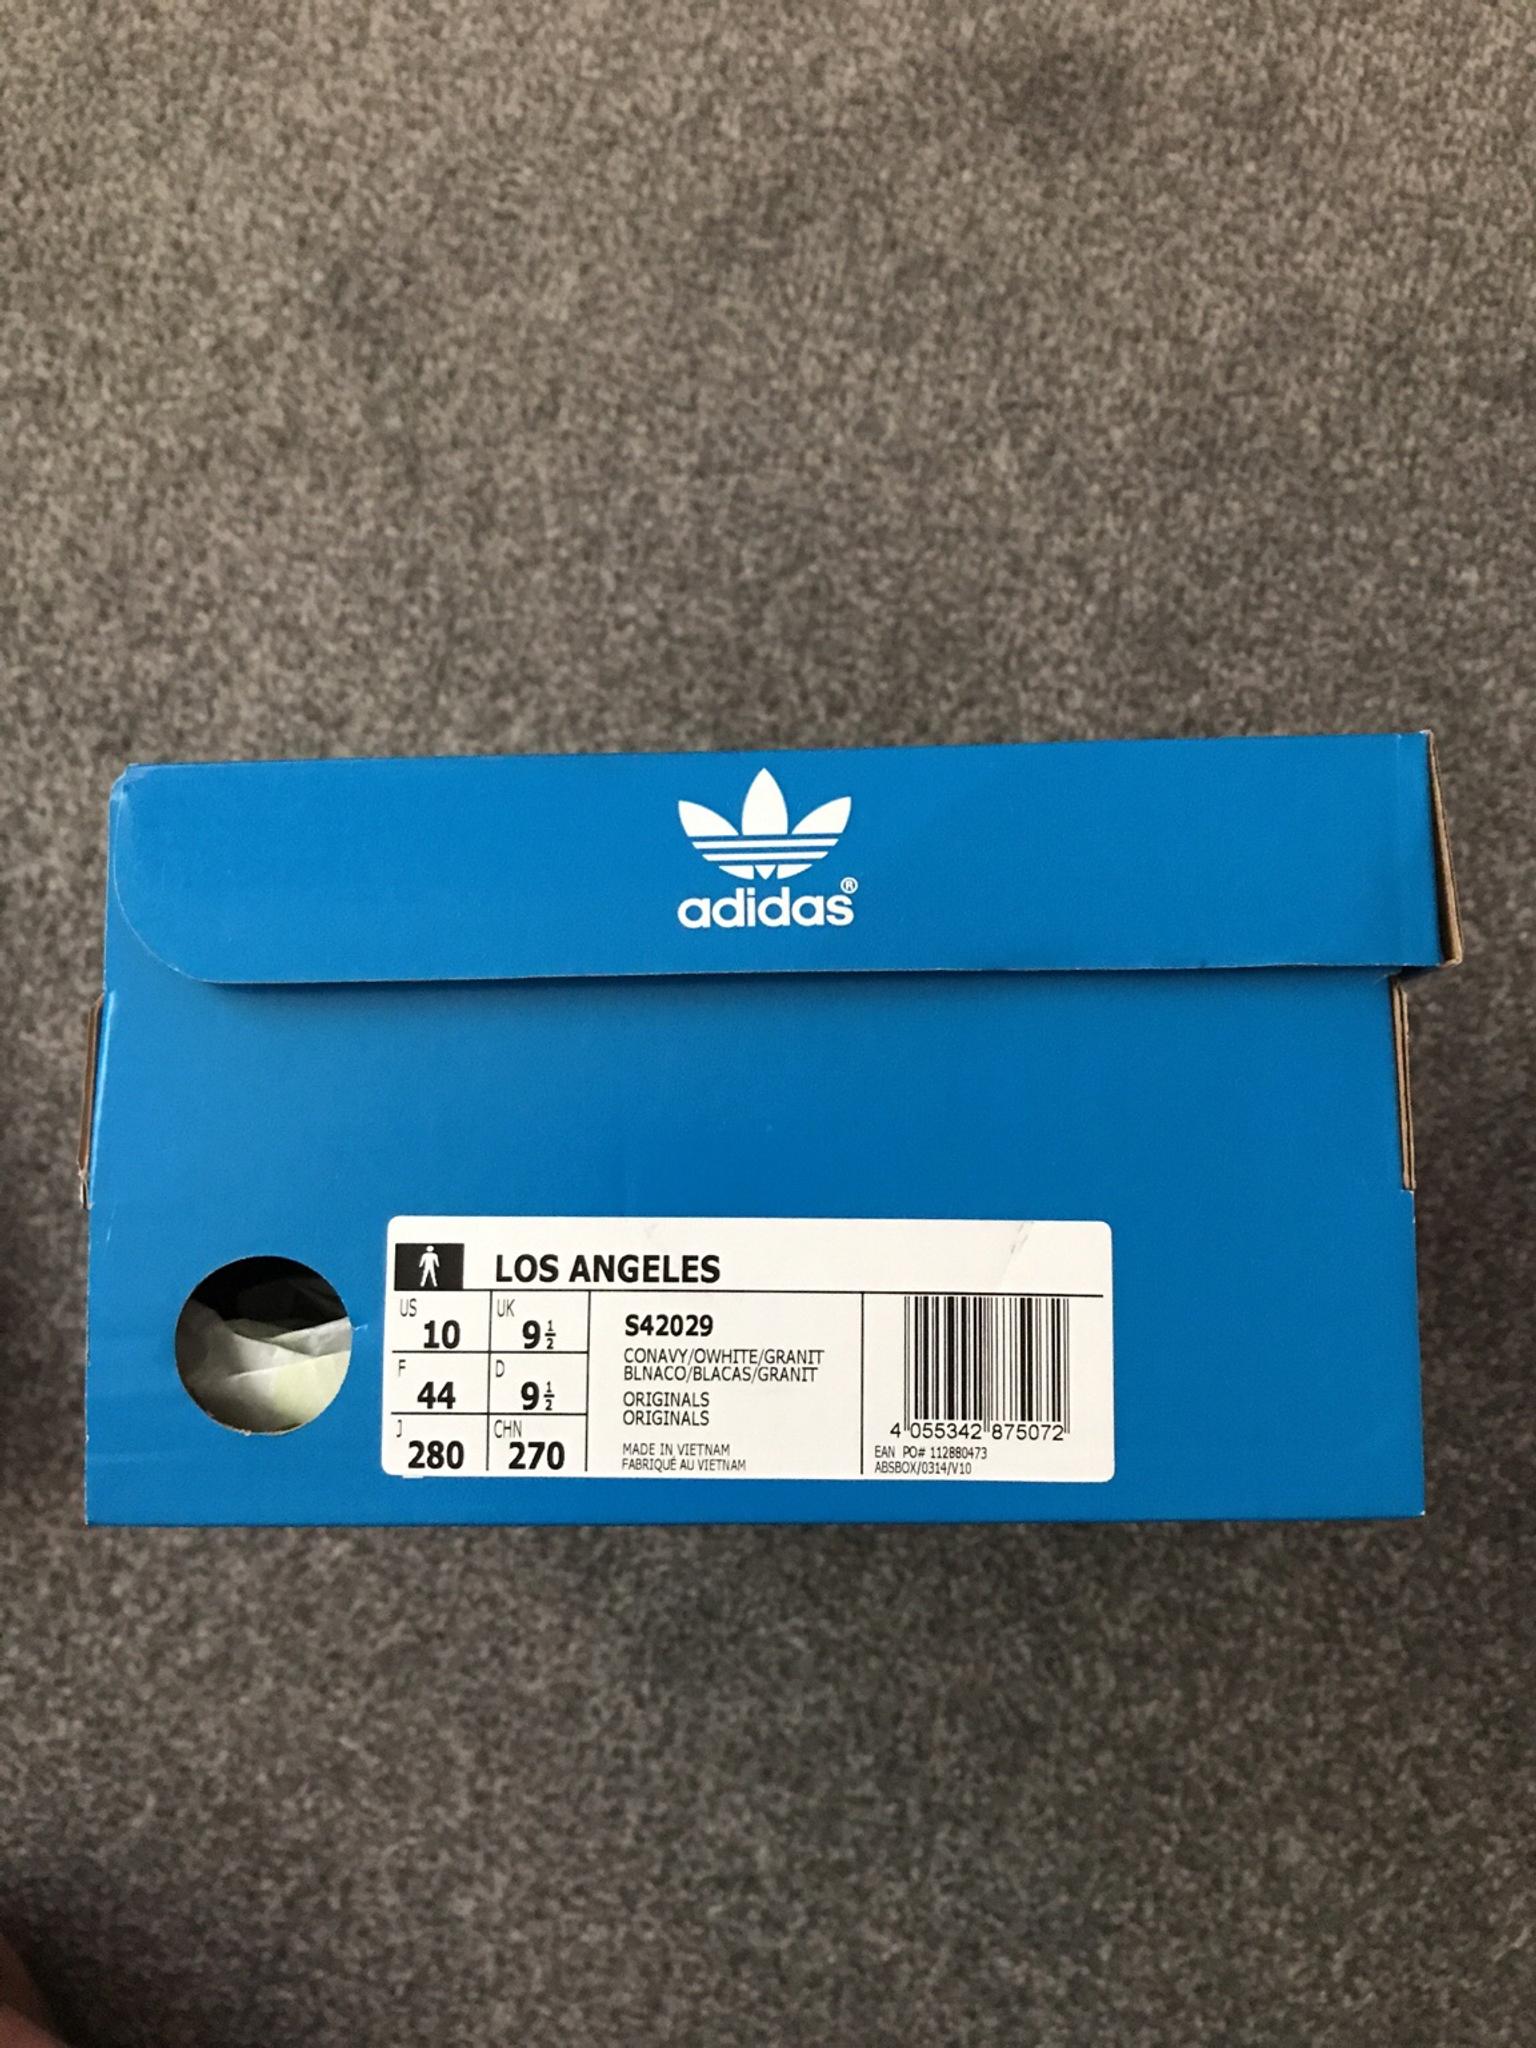 9.5 uk adidas